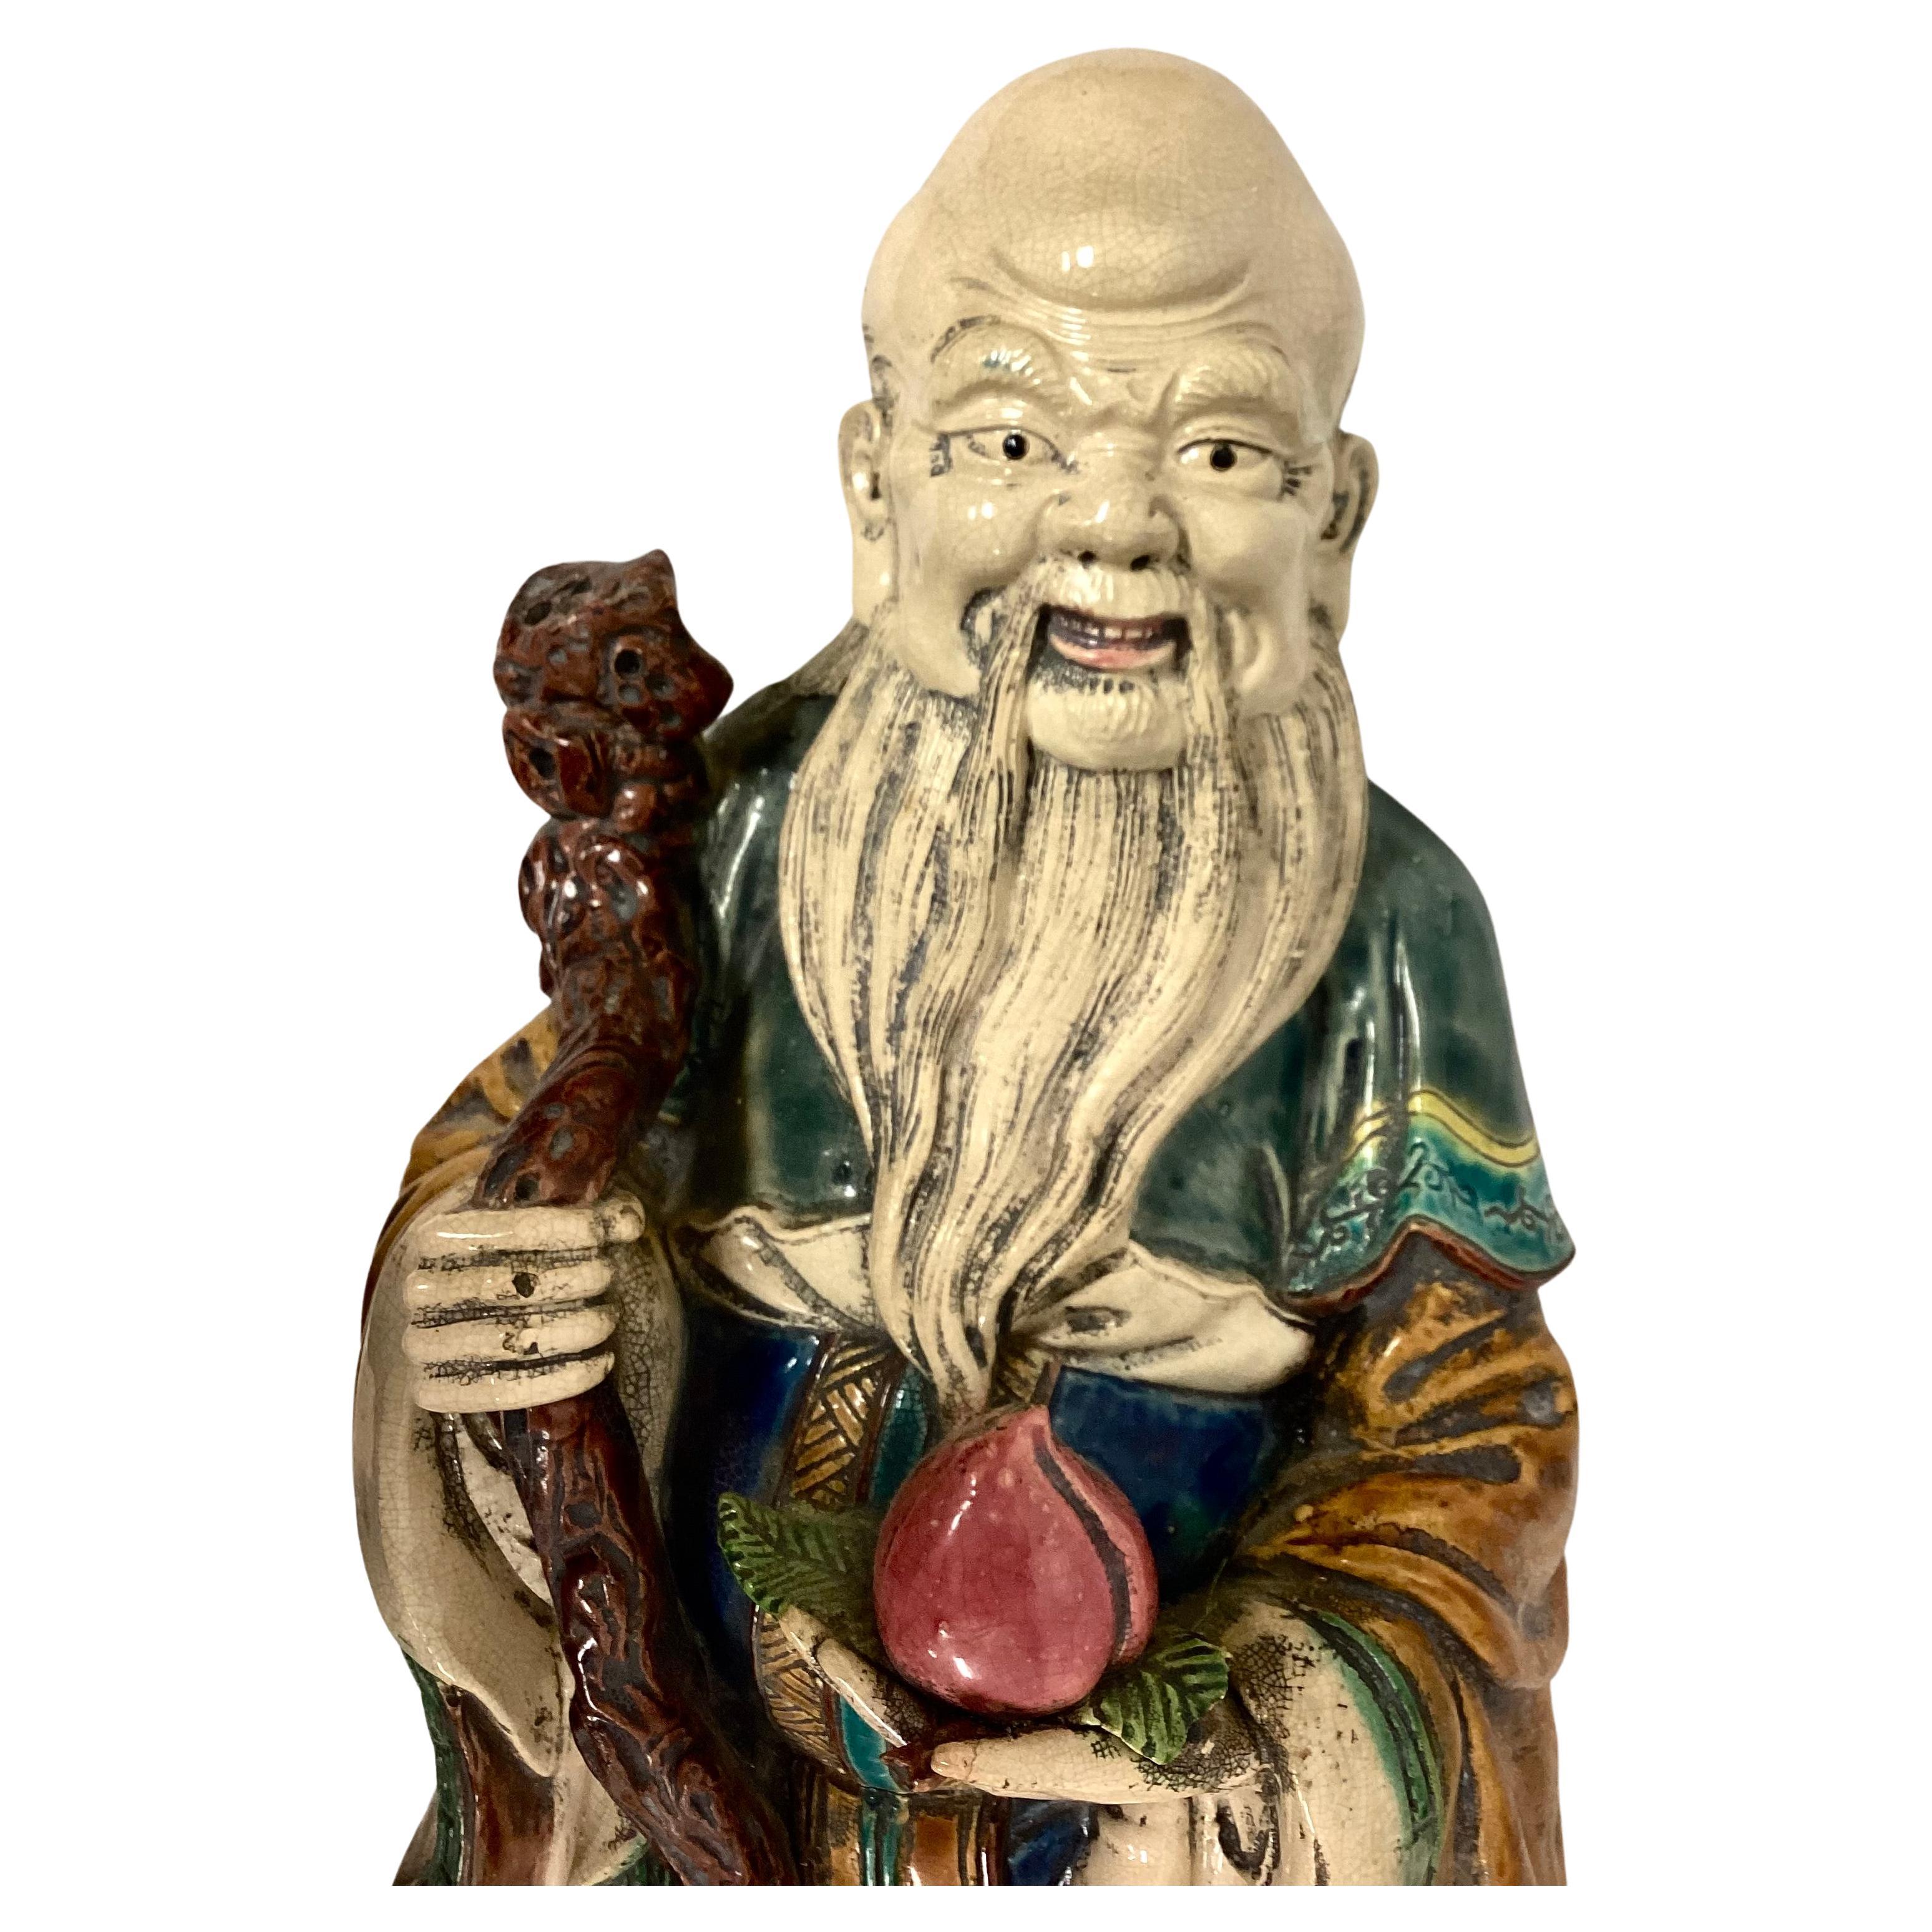 Große chinesische Sage aus dem 19. Jahrhundert aus schwerem Porzellan. Mann in traditionellem Gewand, der in der einen Hand einen großen Spazierstock und in der anderen eine Lotusblume hält. Mit tollen Farben wie Rosa, Blau, Grün, Braun und